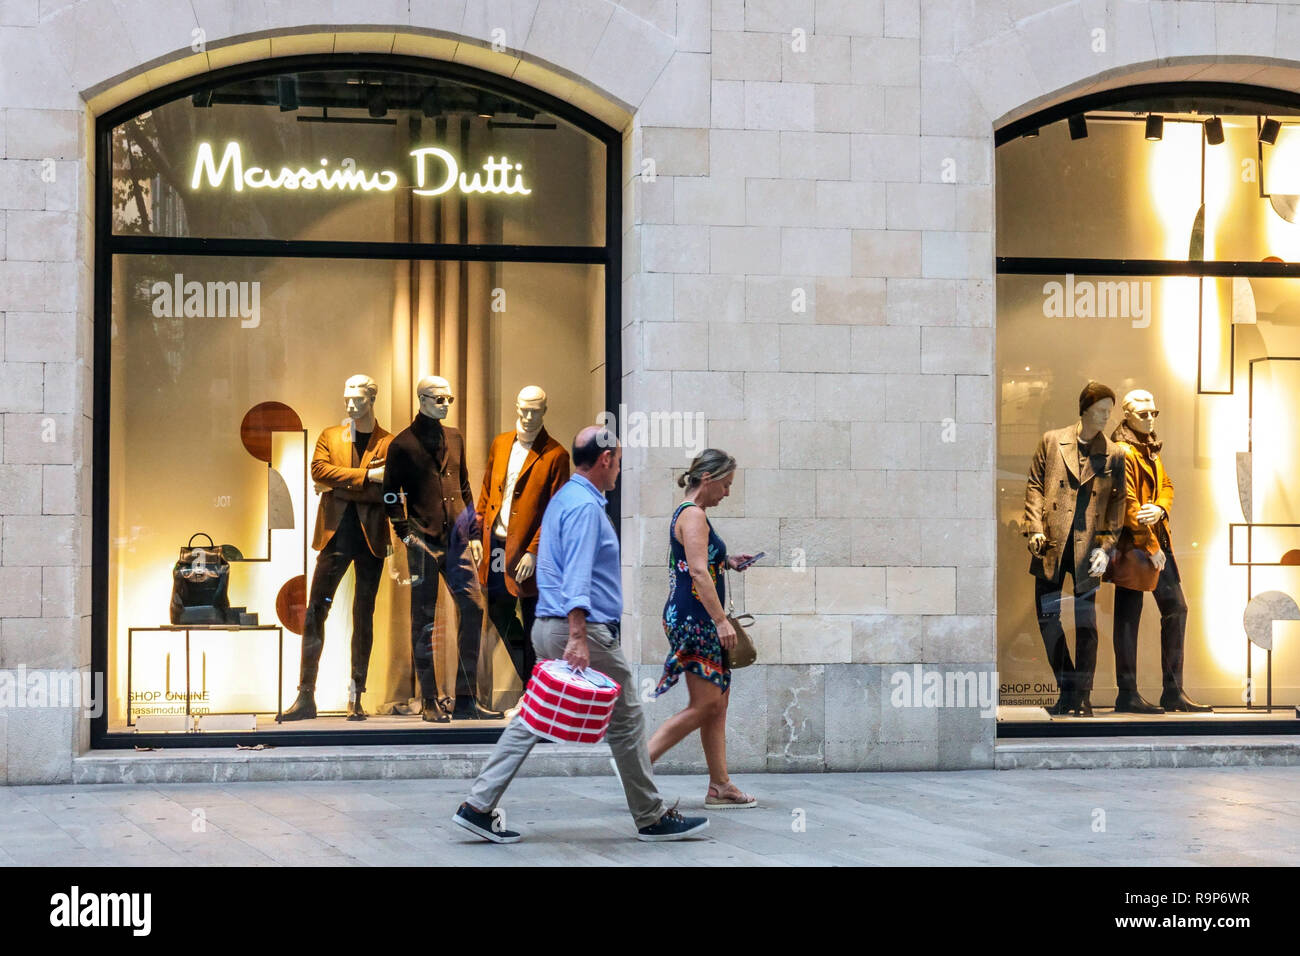 Massimo Dutti store, Passeig des born, Palma de Mallorca, Spain Stock Photo  - Alamy